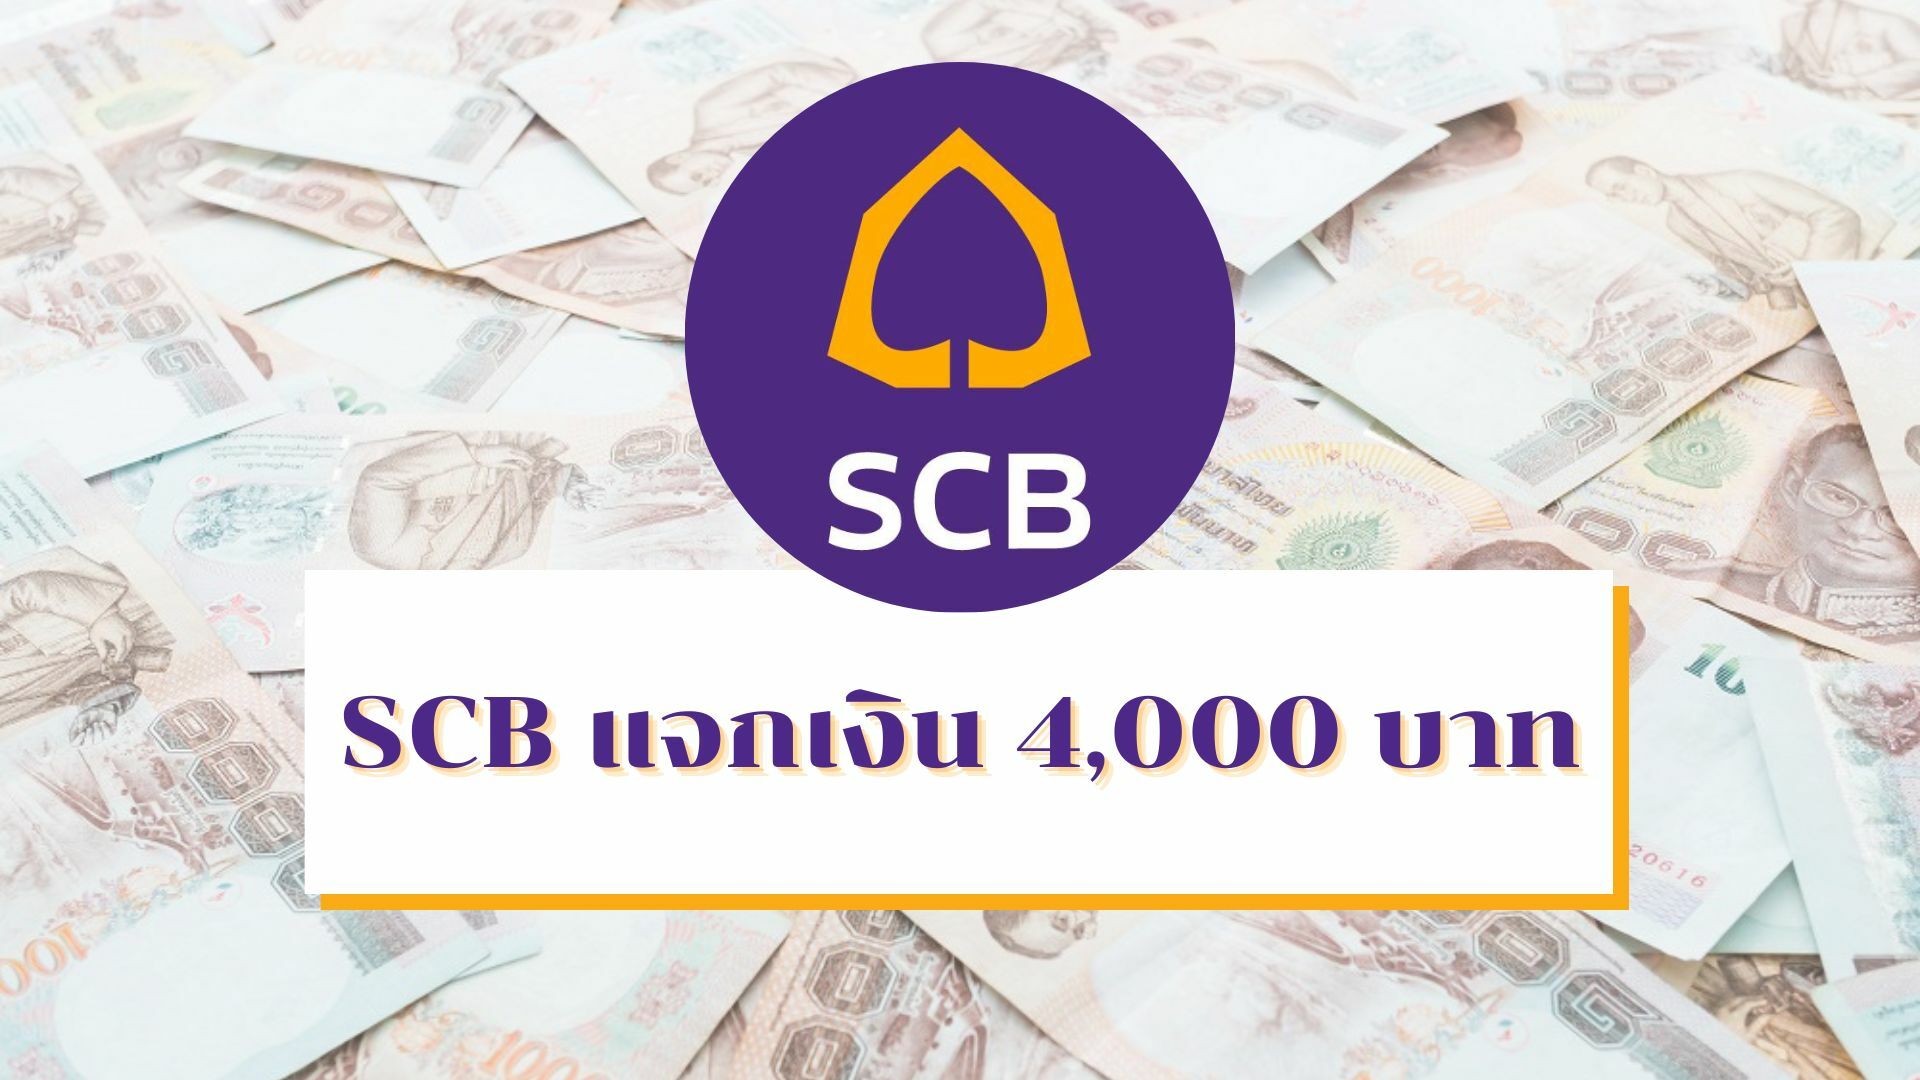 SCB แจกเงิน 4,000 บาท ช่วยเหลือพนักงานค่าครองชีพสูง 1 ก.ย. 65